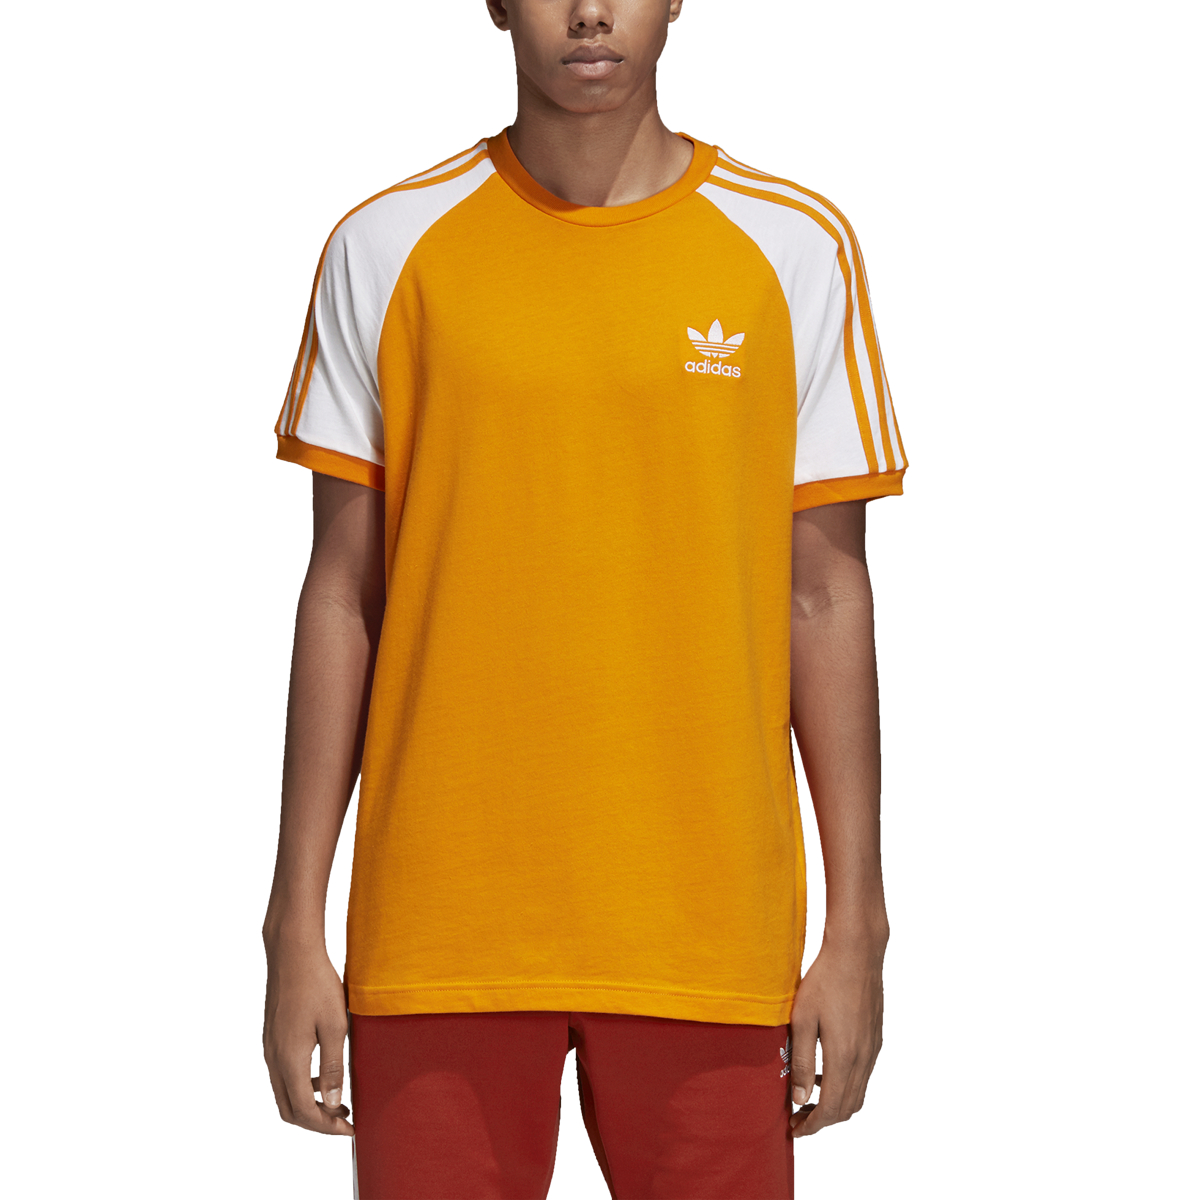 white adidas with orange stripes